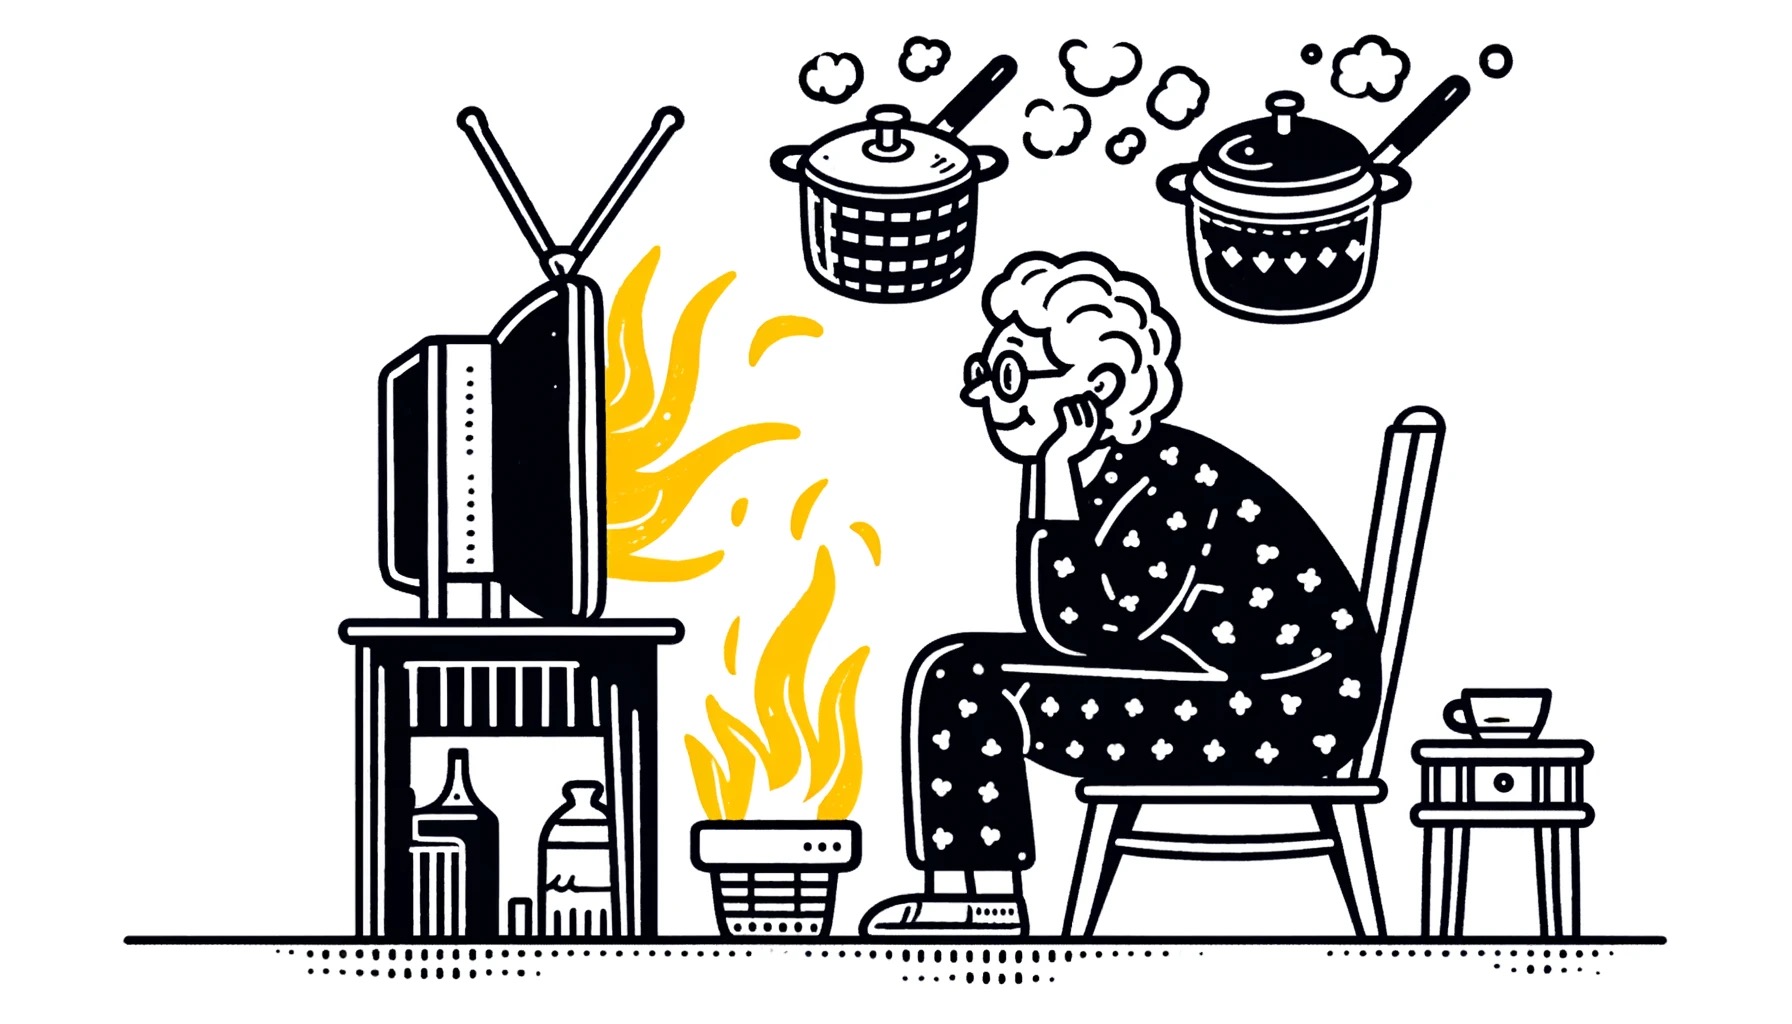 Landschapstekening van een oudere vrouw in de gematigde fase van dementie, geboeid door de televisie die in brand staat terwijl het eten op het vuur staat. De verwarrende tekening symboliseert de verwarring in haar hoofd.